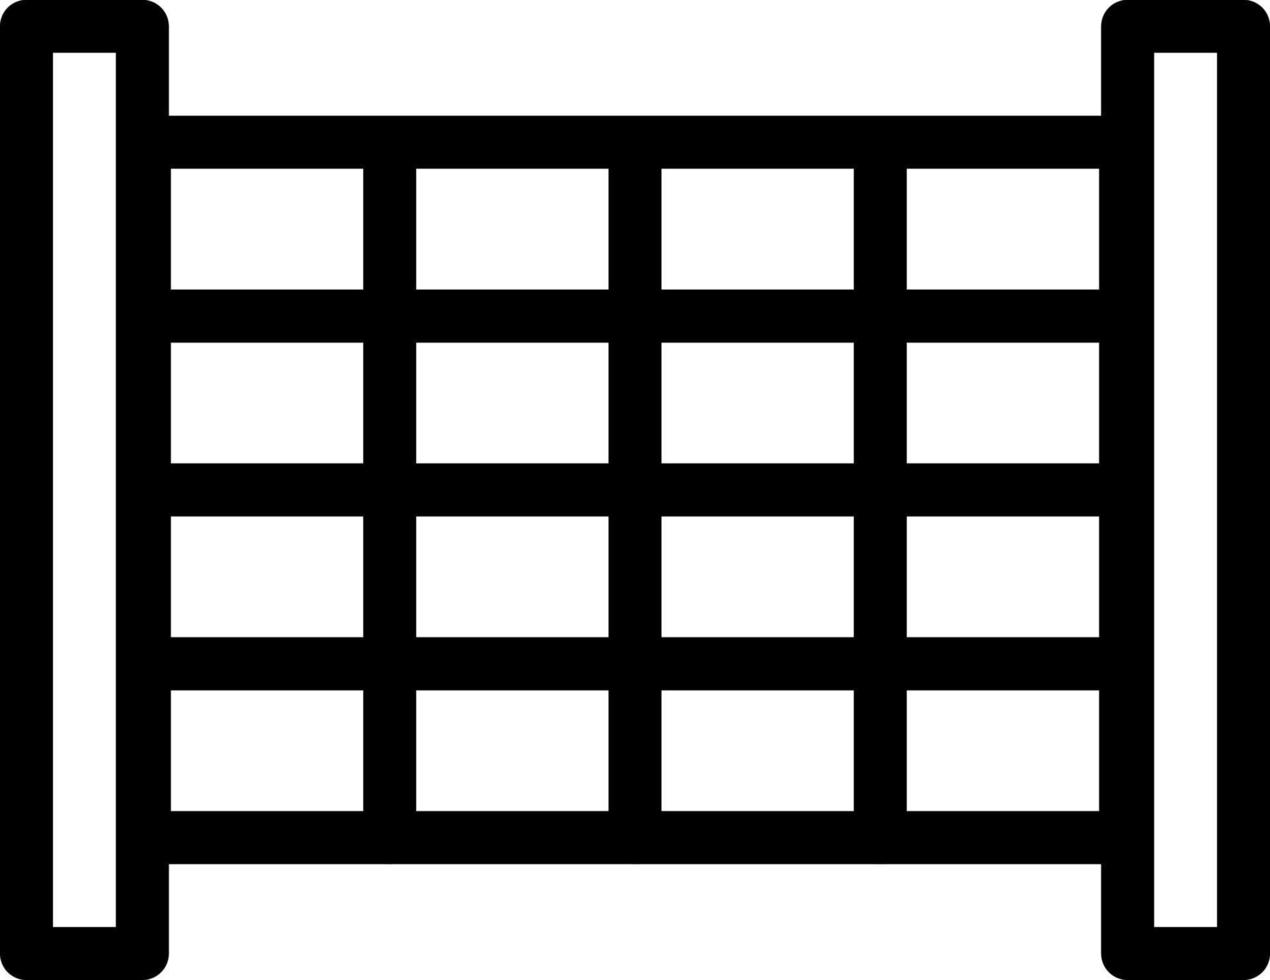 illustrazione vettoriale della parete su uno sfondo simboli di qualità premium. icone vettoriali per il concetto e la progettazione grafica.